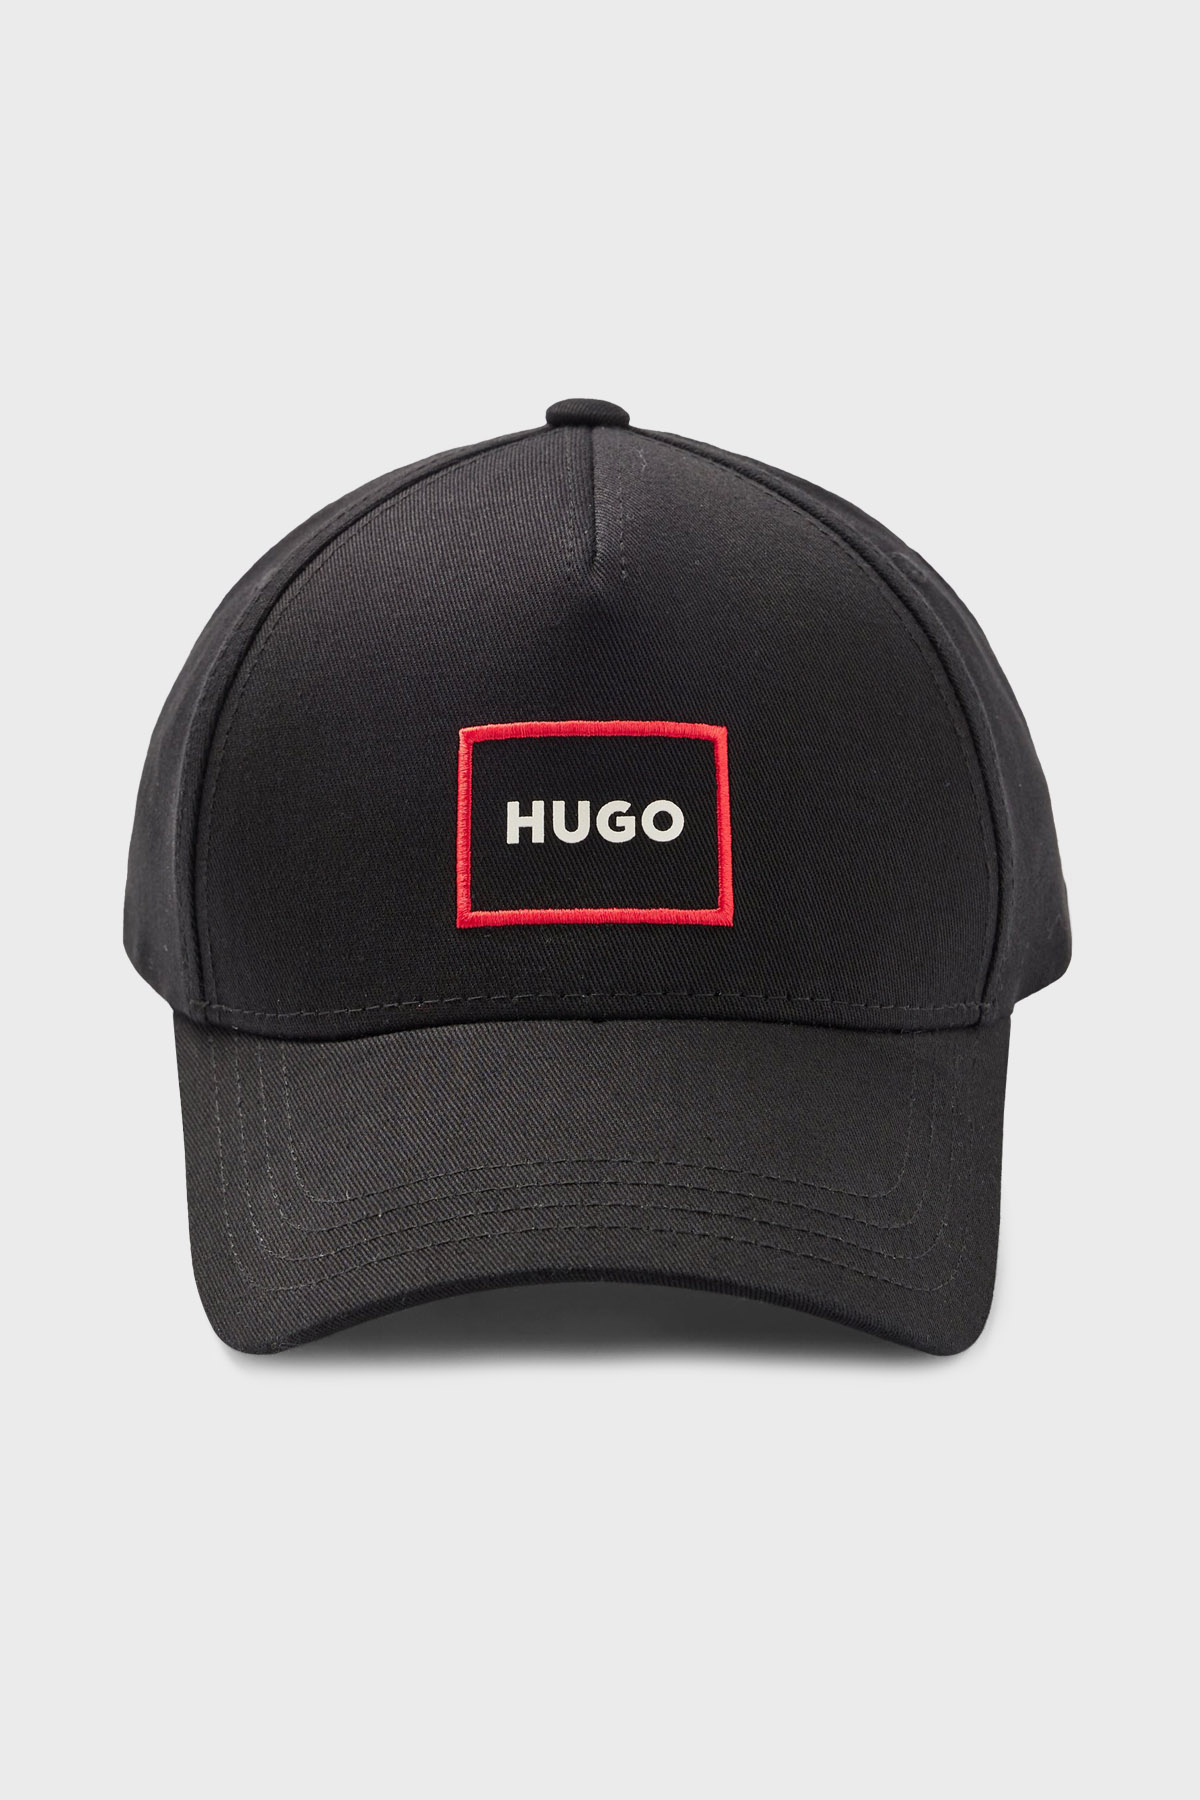 Hugo Logolu % 100 Pamuk Erkek Şapka 50477699 001 SİYAH